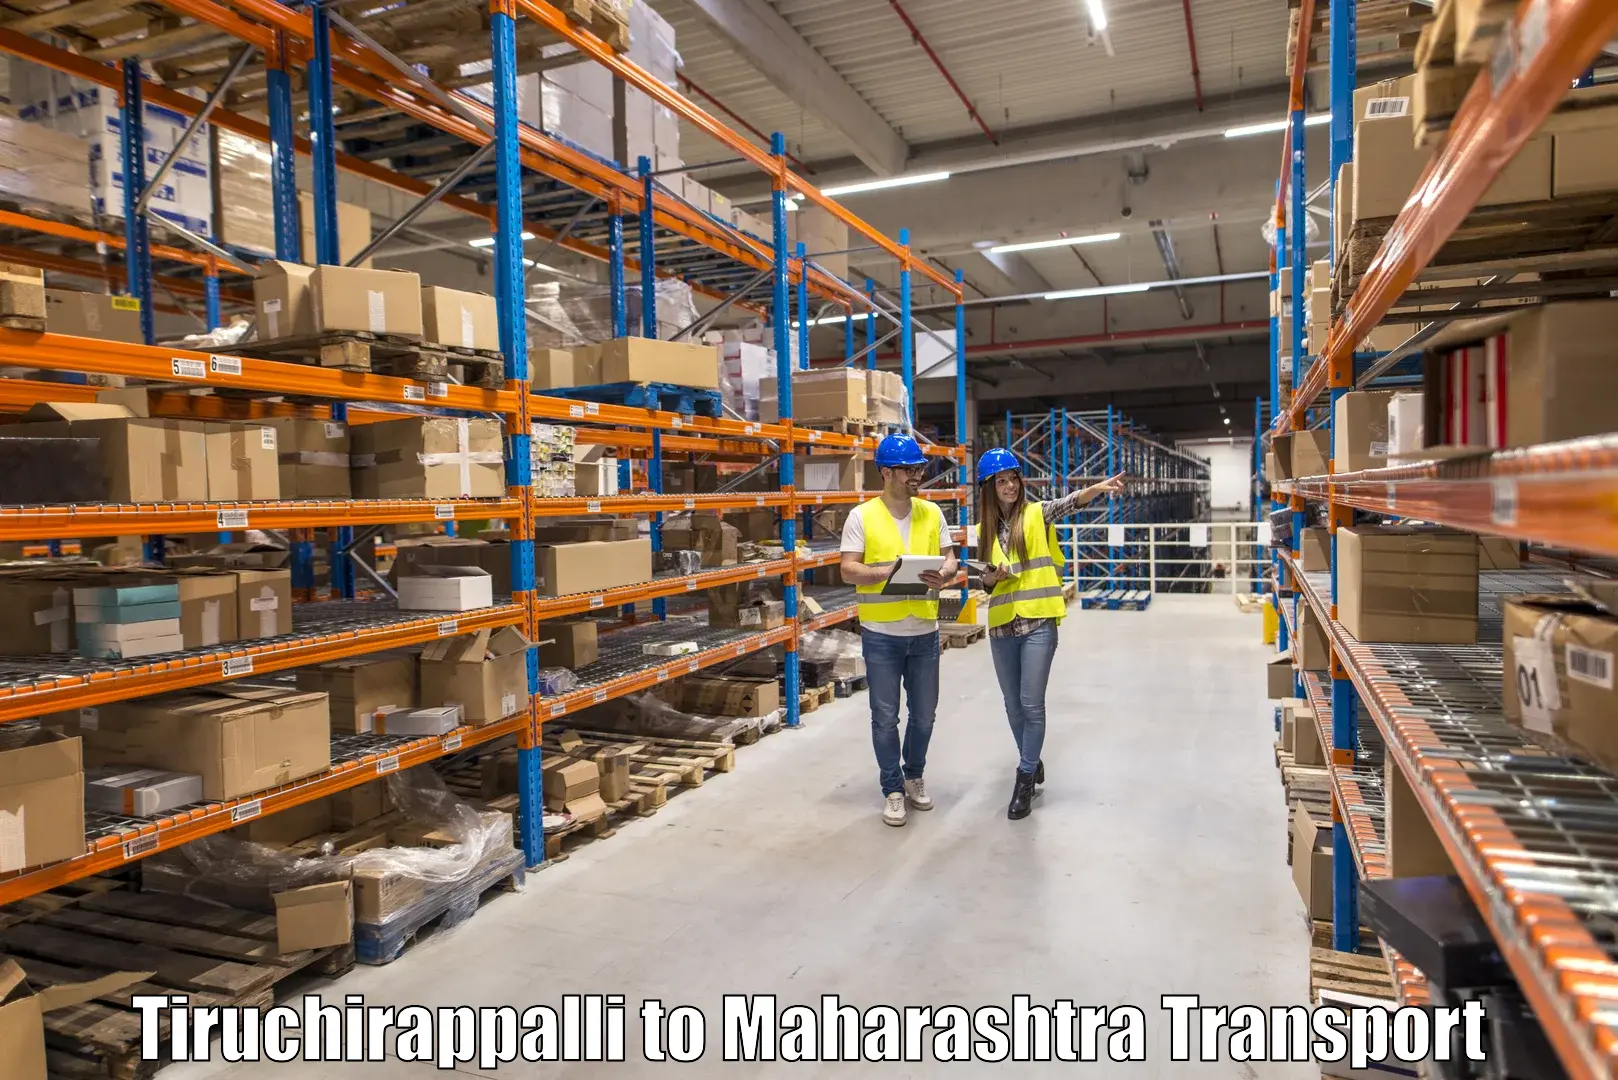 Air freight transport services Tiruchirappalli to Kankavali